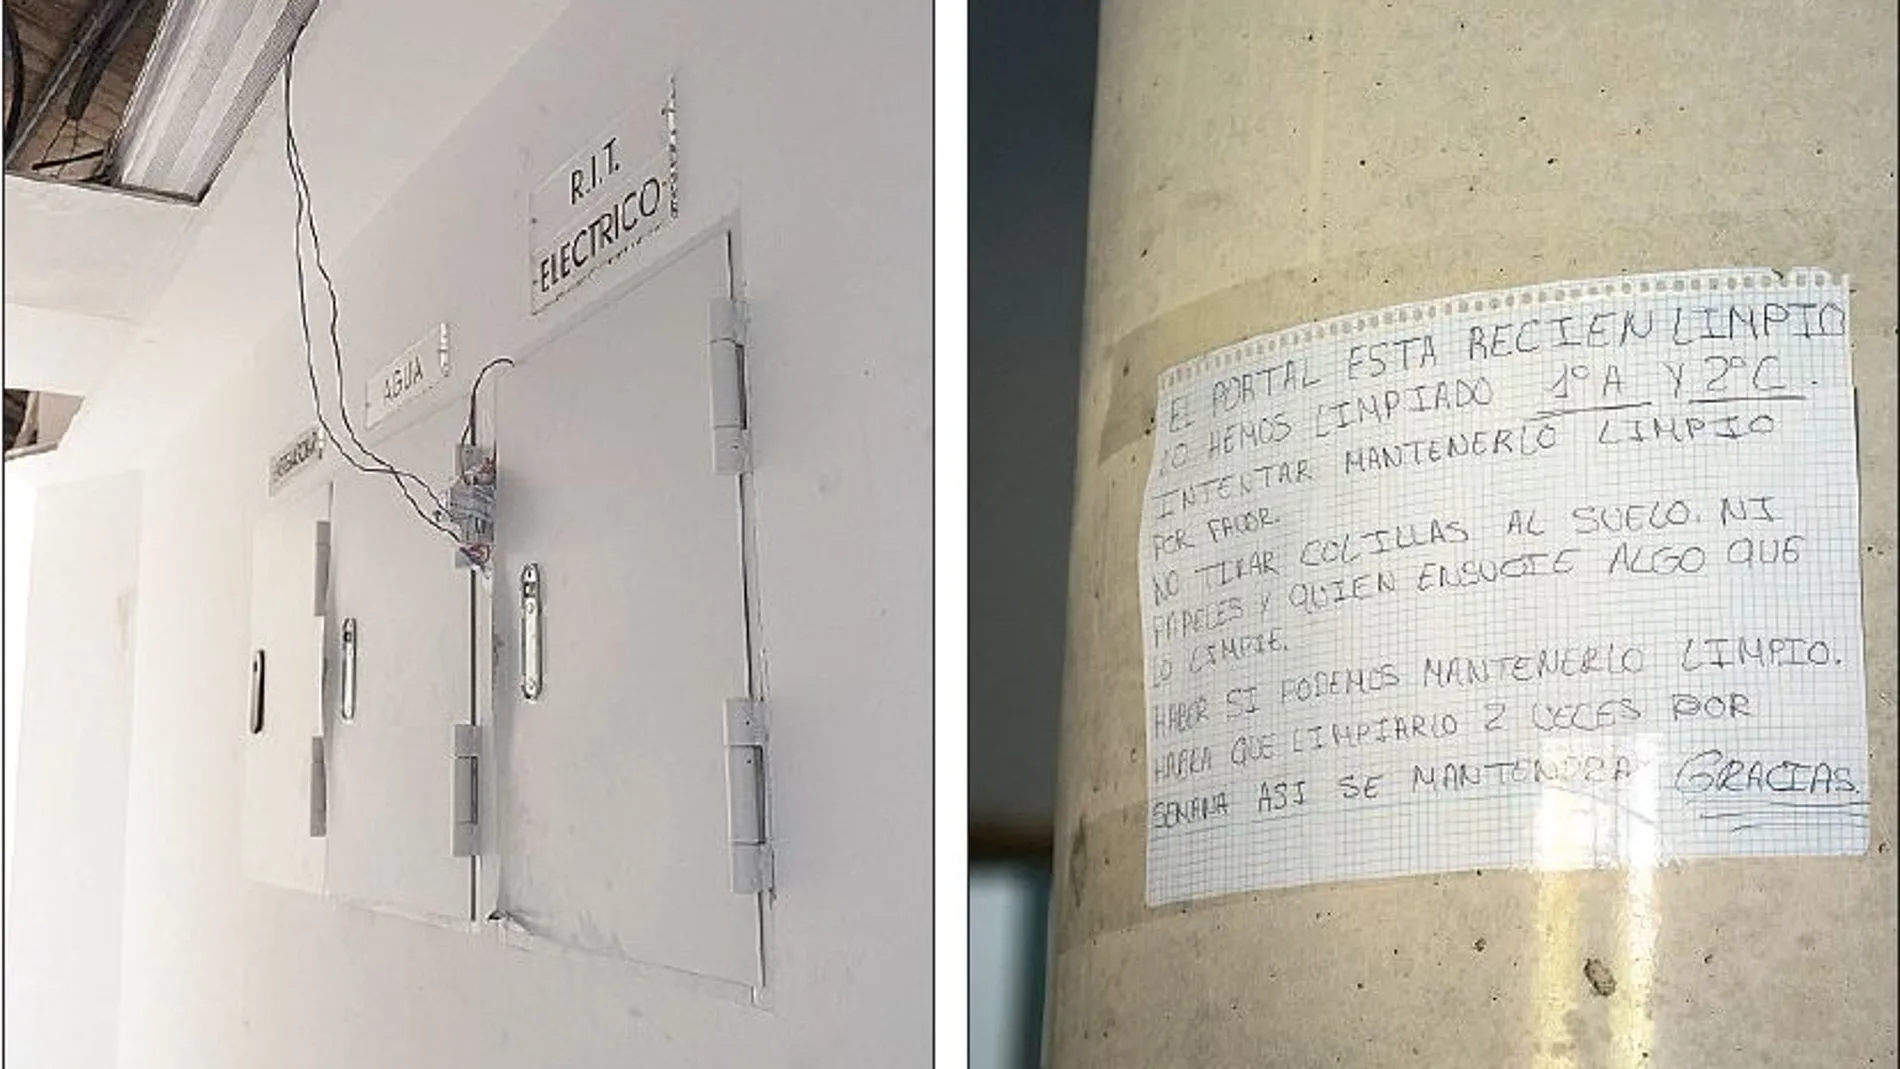 A la izquierda, una muestra del estado en el que dejaron los anteriores okupas las instalaciones del edificio; a la derecha, un cartel que demuestra el civismo de los recién llegados a Cronos